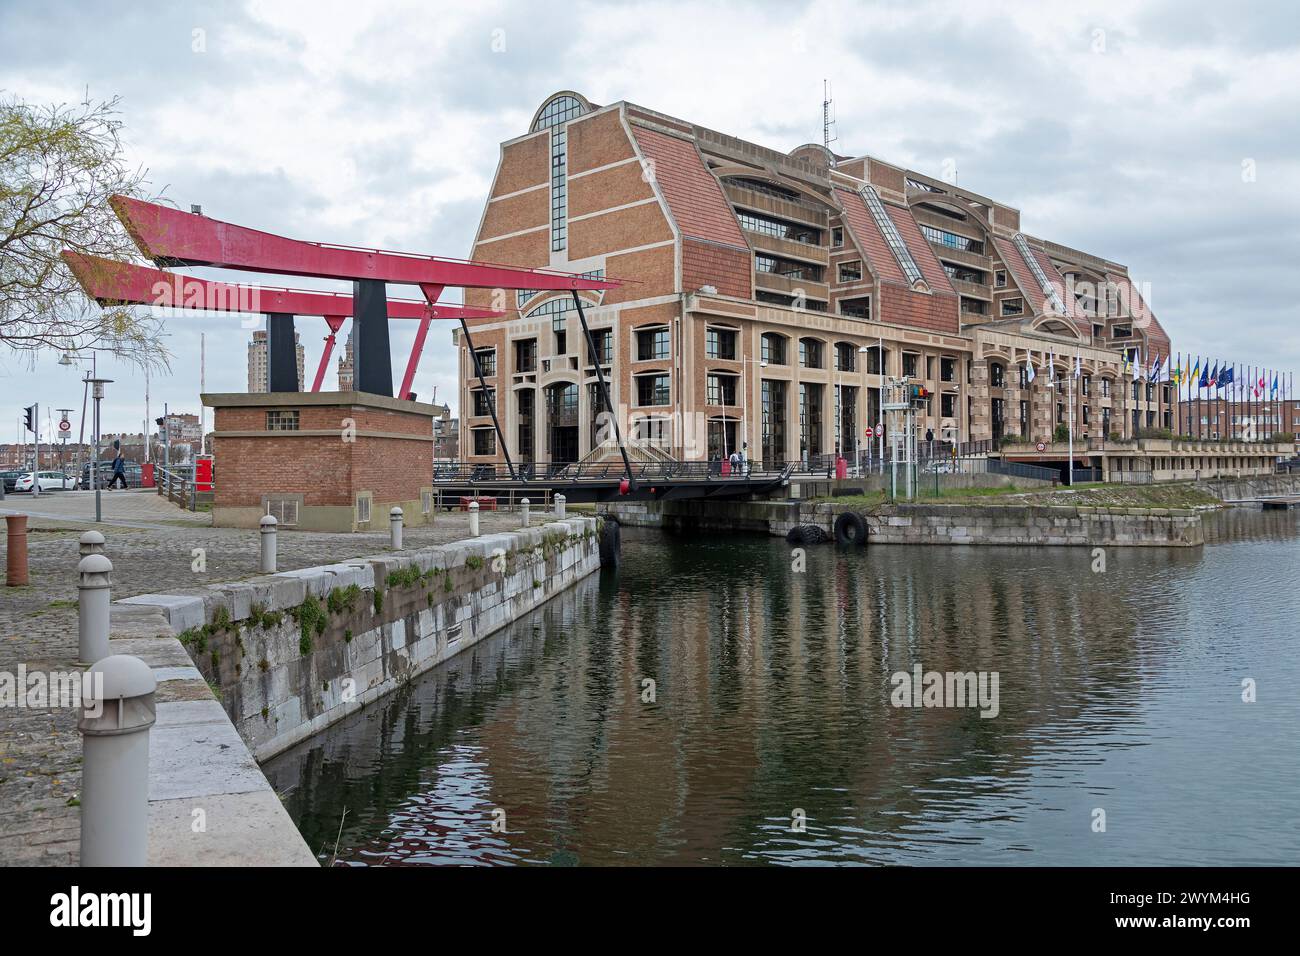 Communauté urbaine de Dunkerque, building, Harbour, Dunkerque, Département Nord, France Banque D'Images